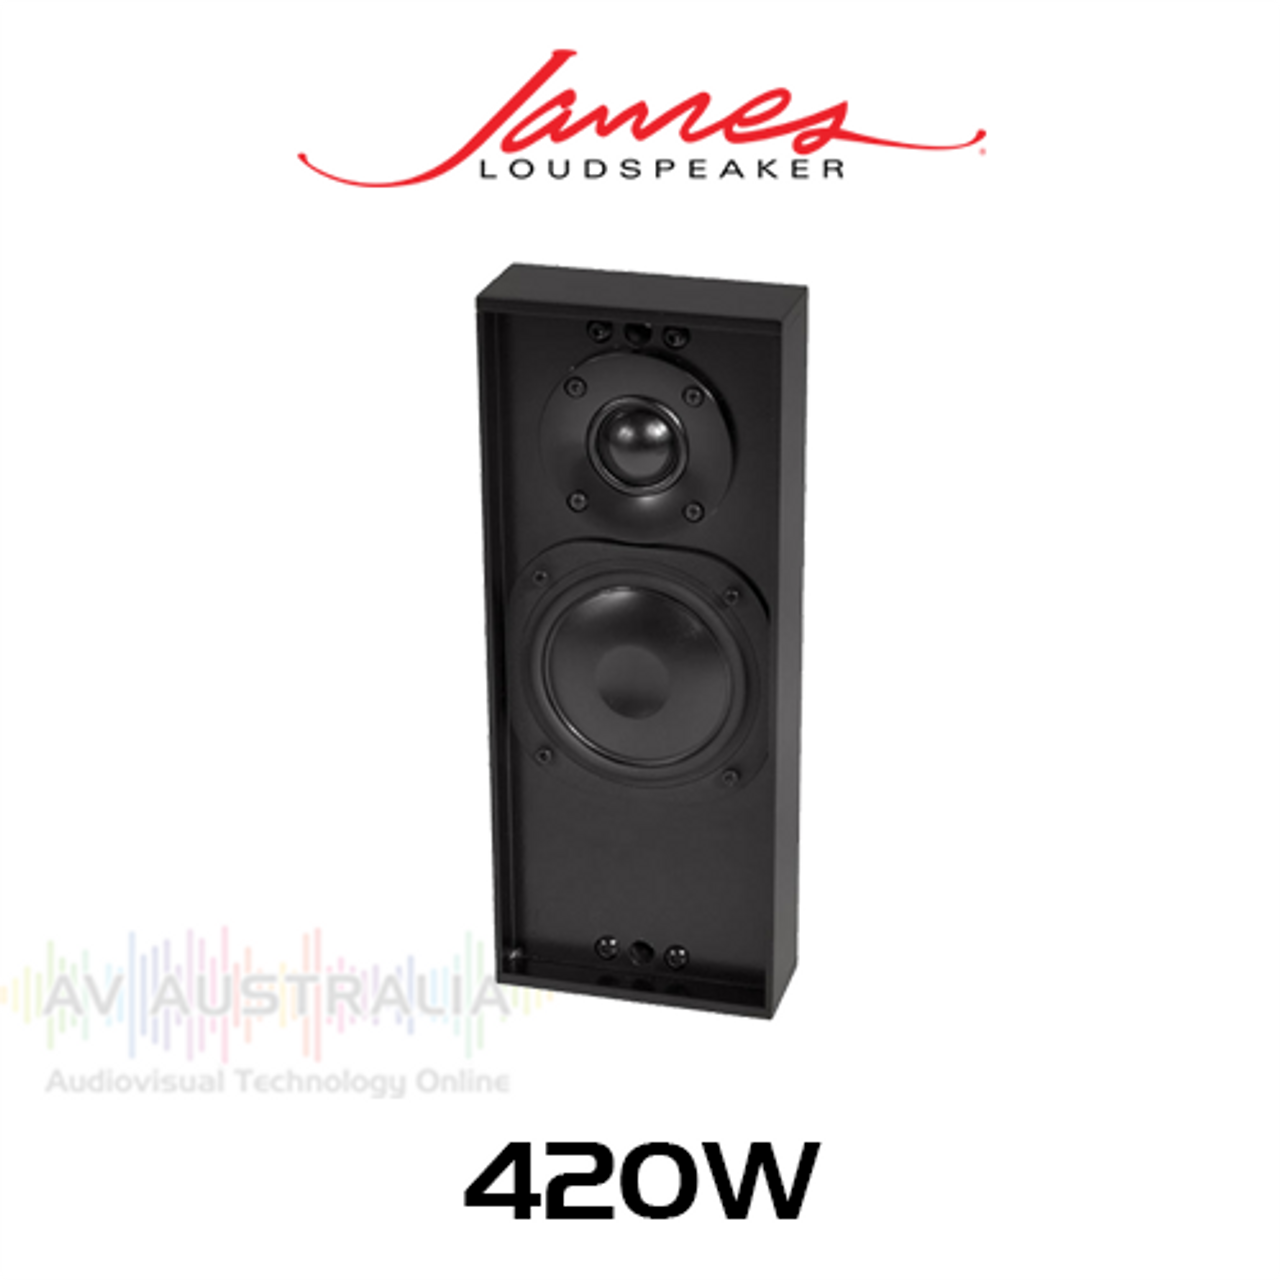 James Loudspeaker 42OW 3.5" On-Wall Loudspeaker - 1.7" Depth (Each)